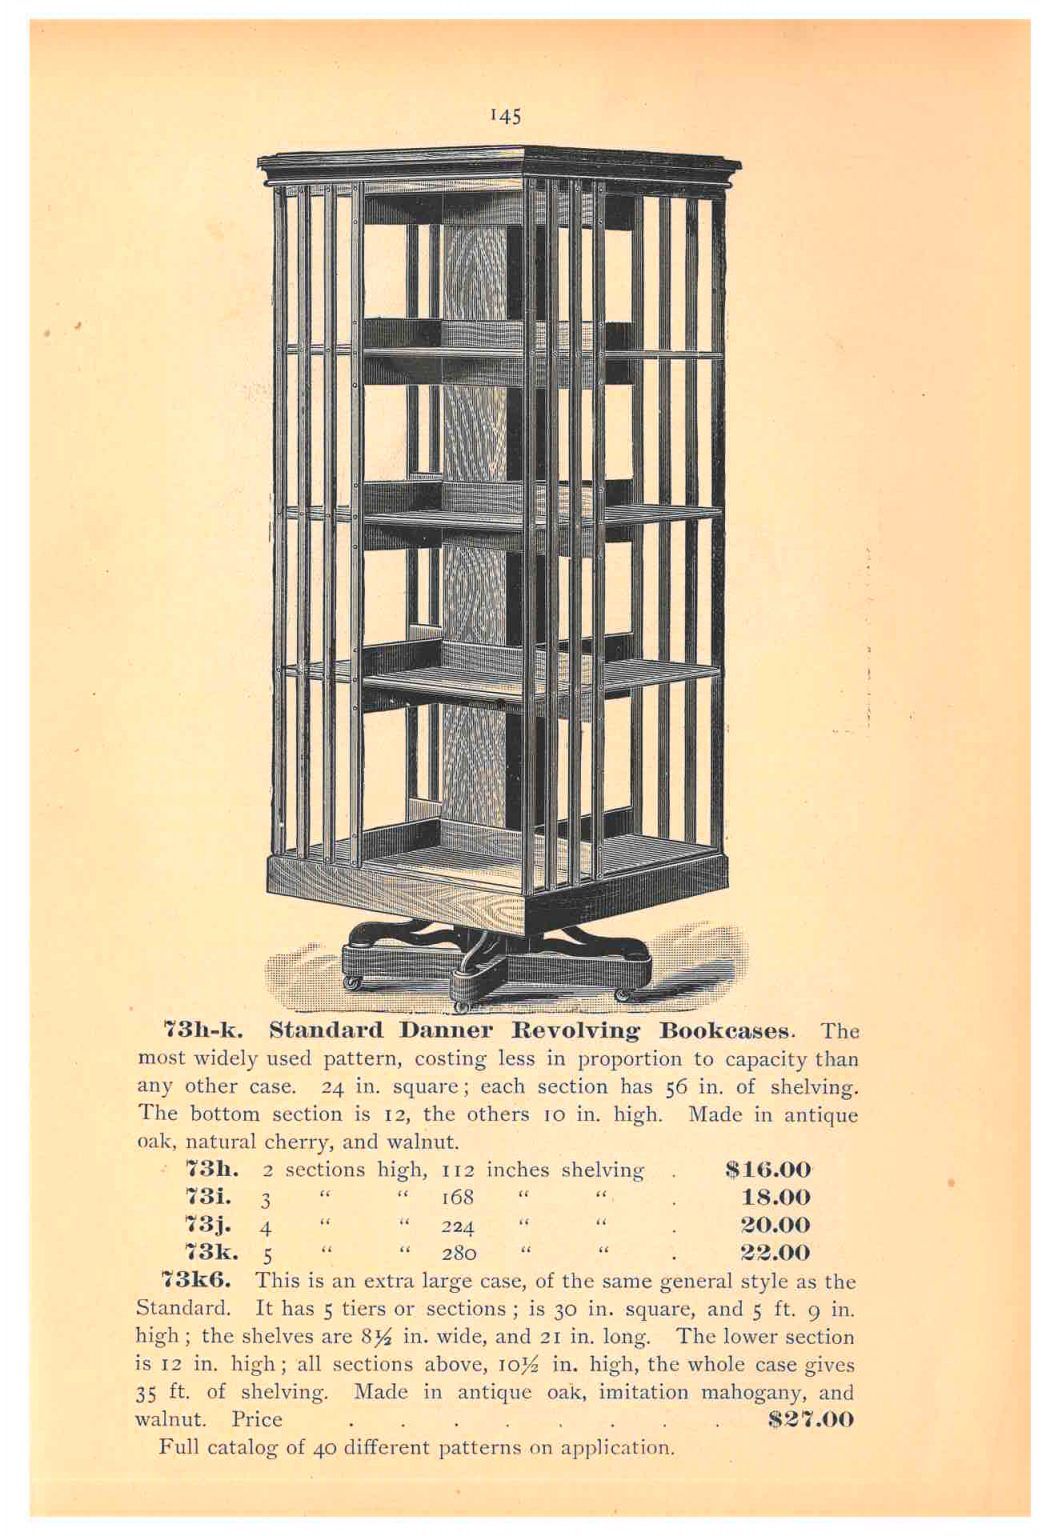 Trade catalog illustration of revolving book shelf